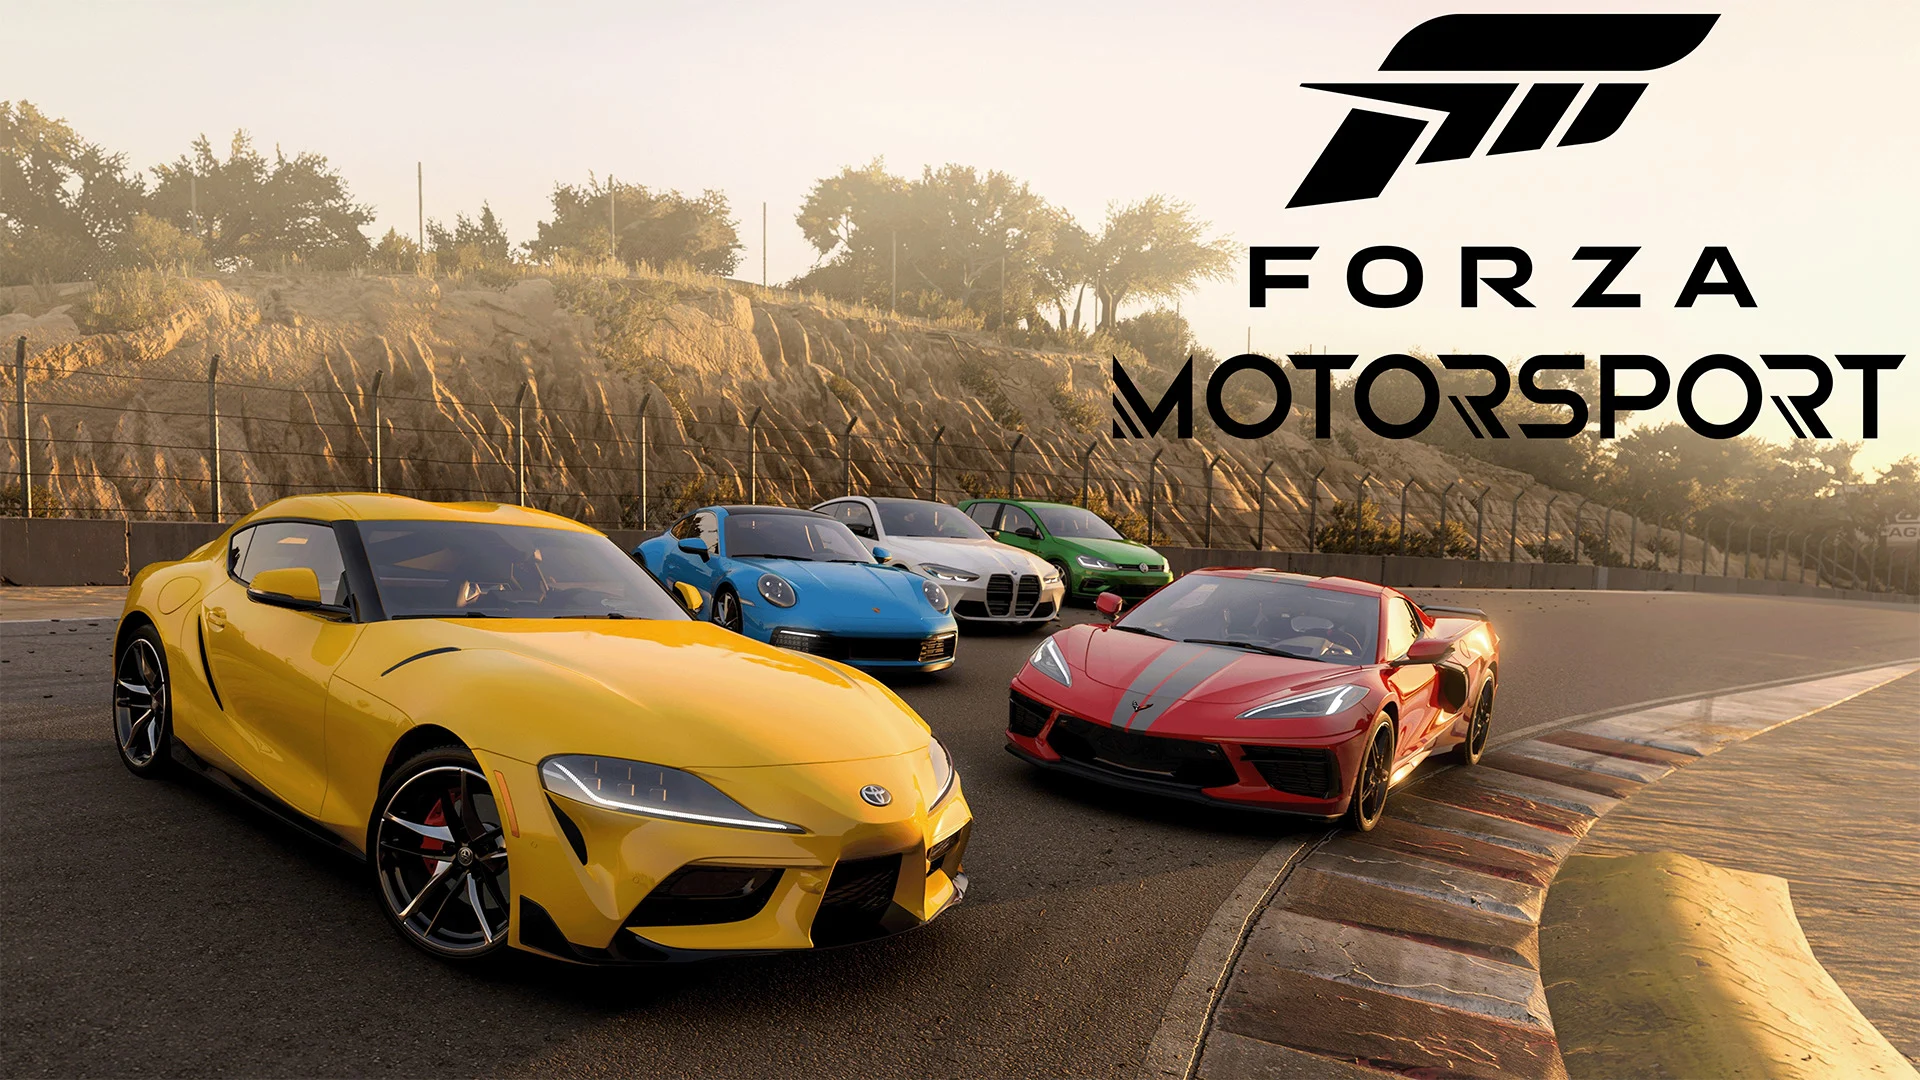 Aggiornamento 1.0 di Forza Motorsport con una serie di correzioni di bug e miglioramenti del gameplay